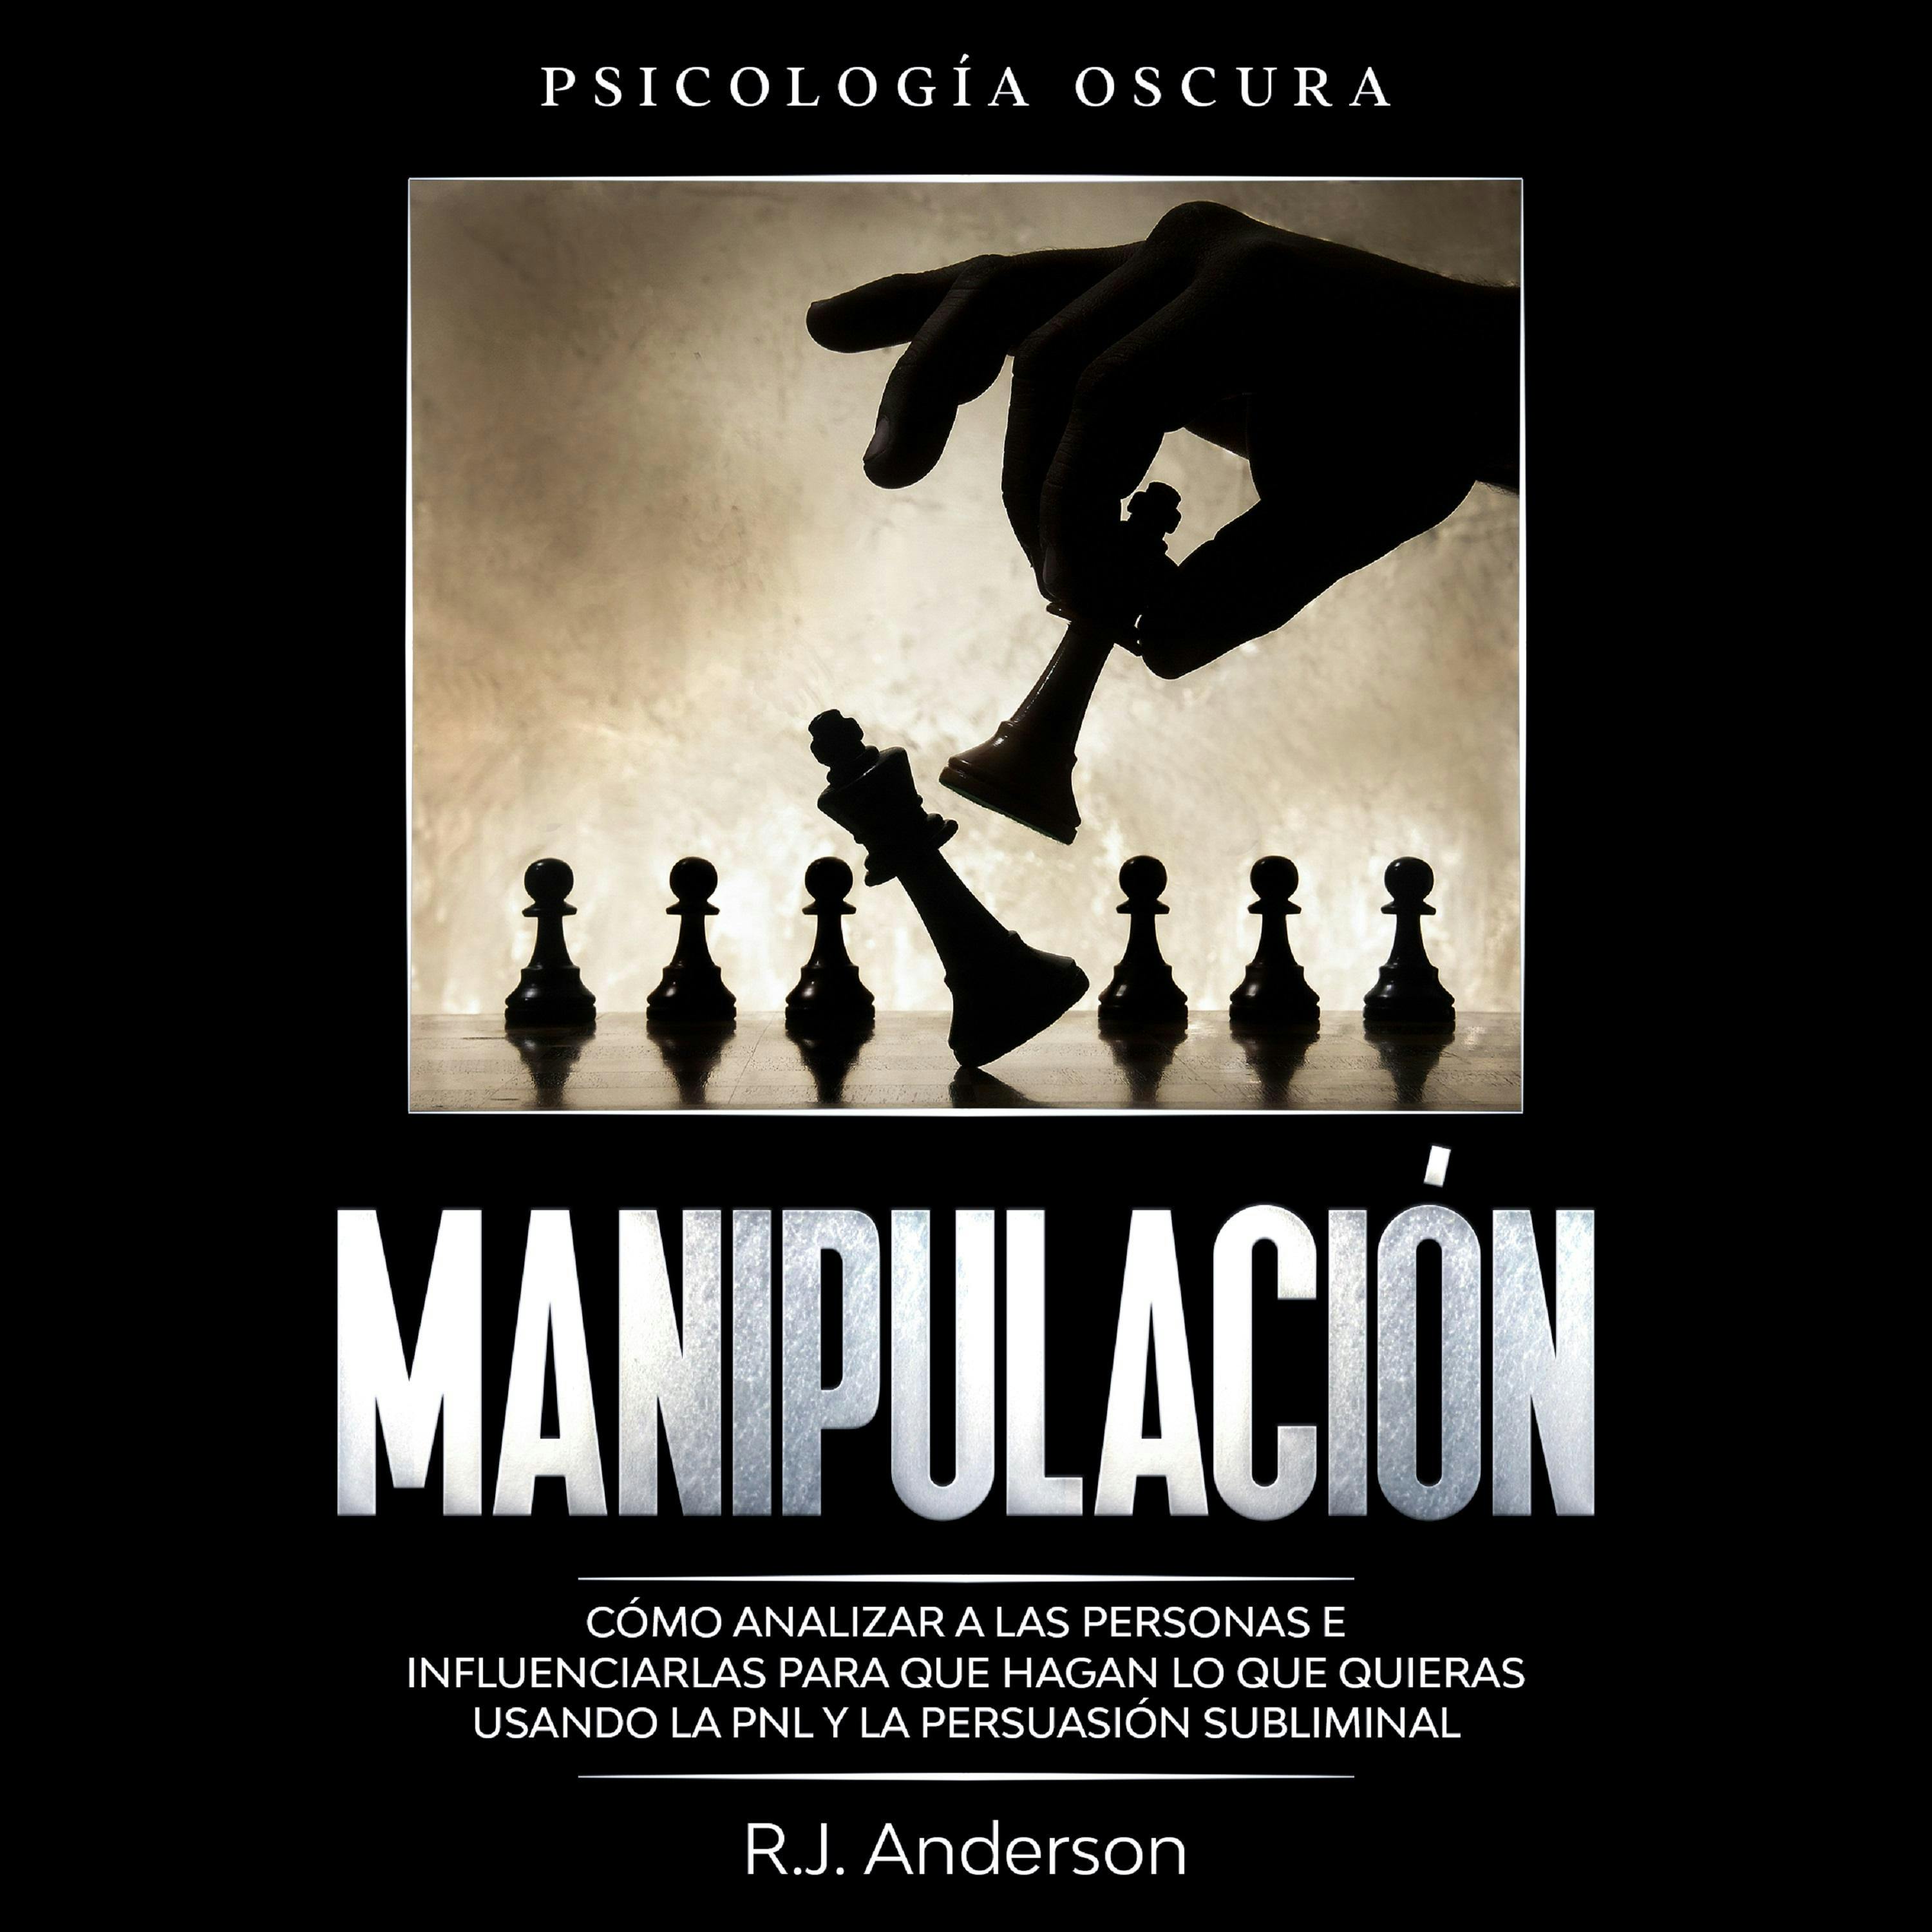 Manipulación: Psicología oscura - Cómo analizar a las personas e influenciarlas para que hagan lo que quieras usando la PNL y la persuasión subliminal - R.J. Anderson